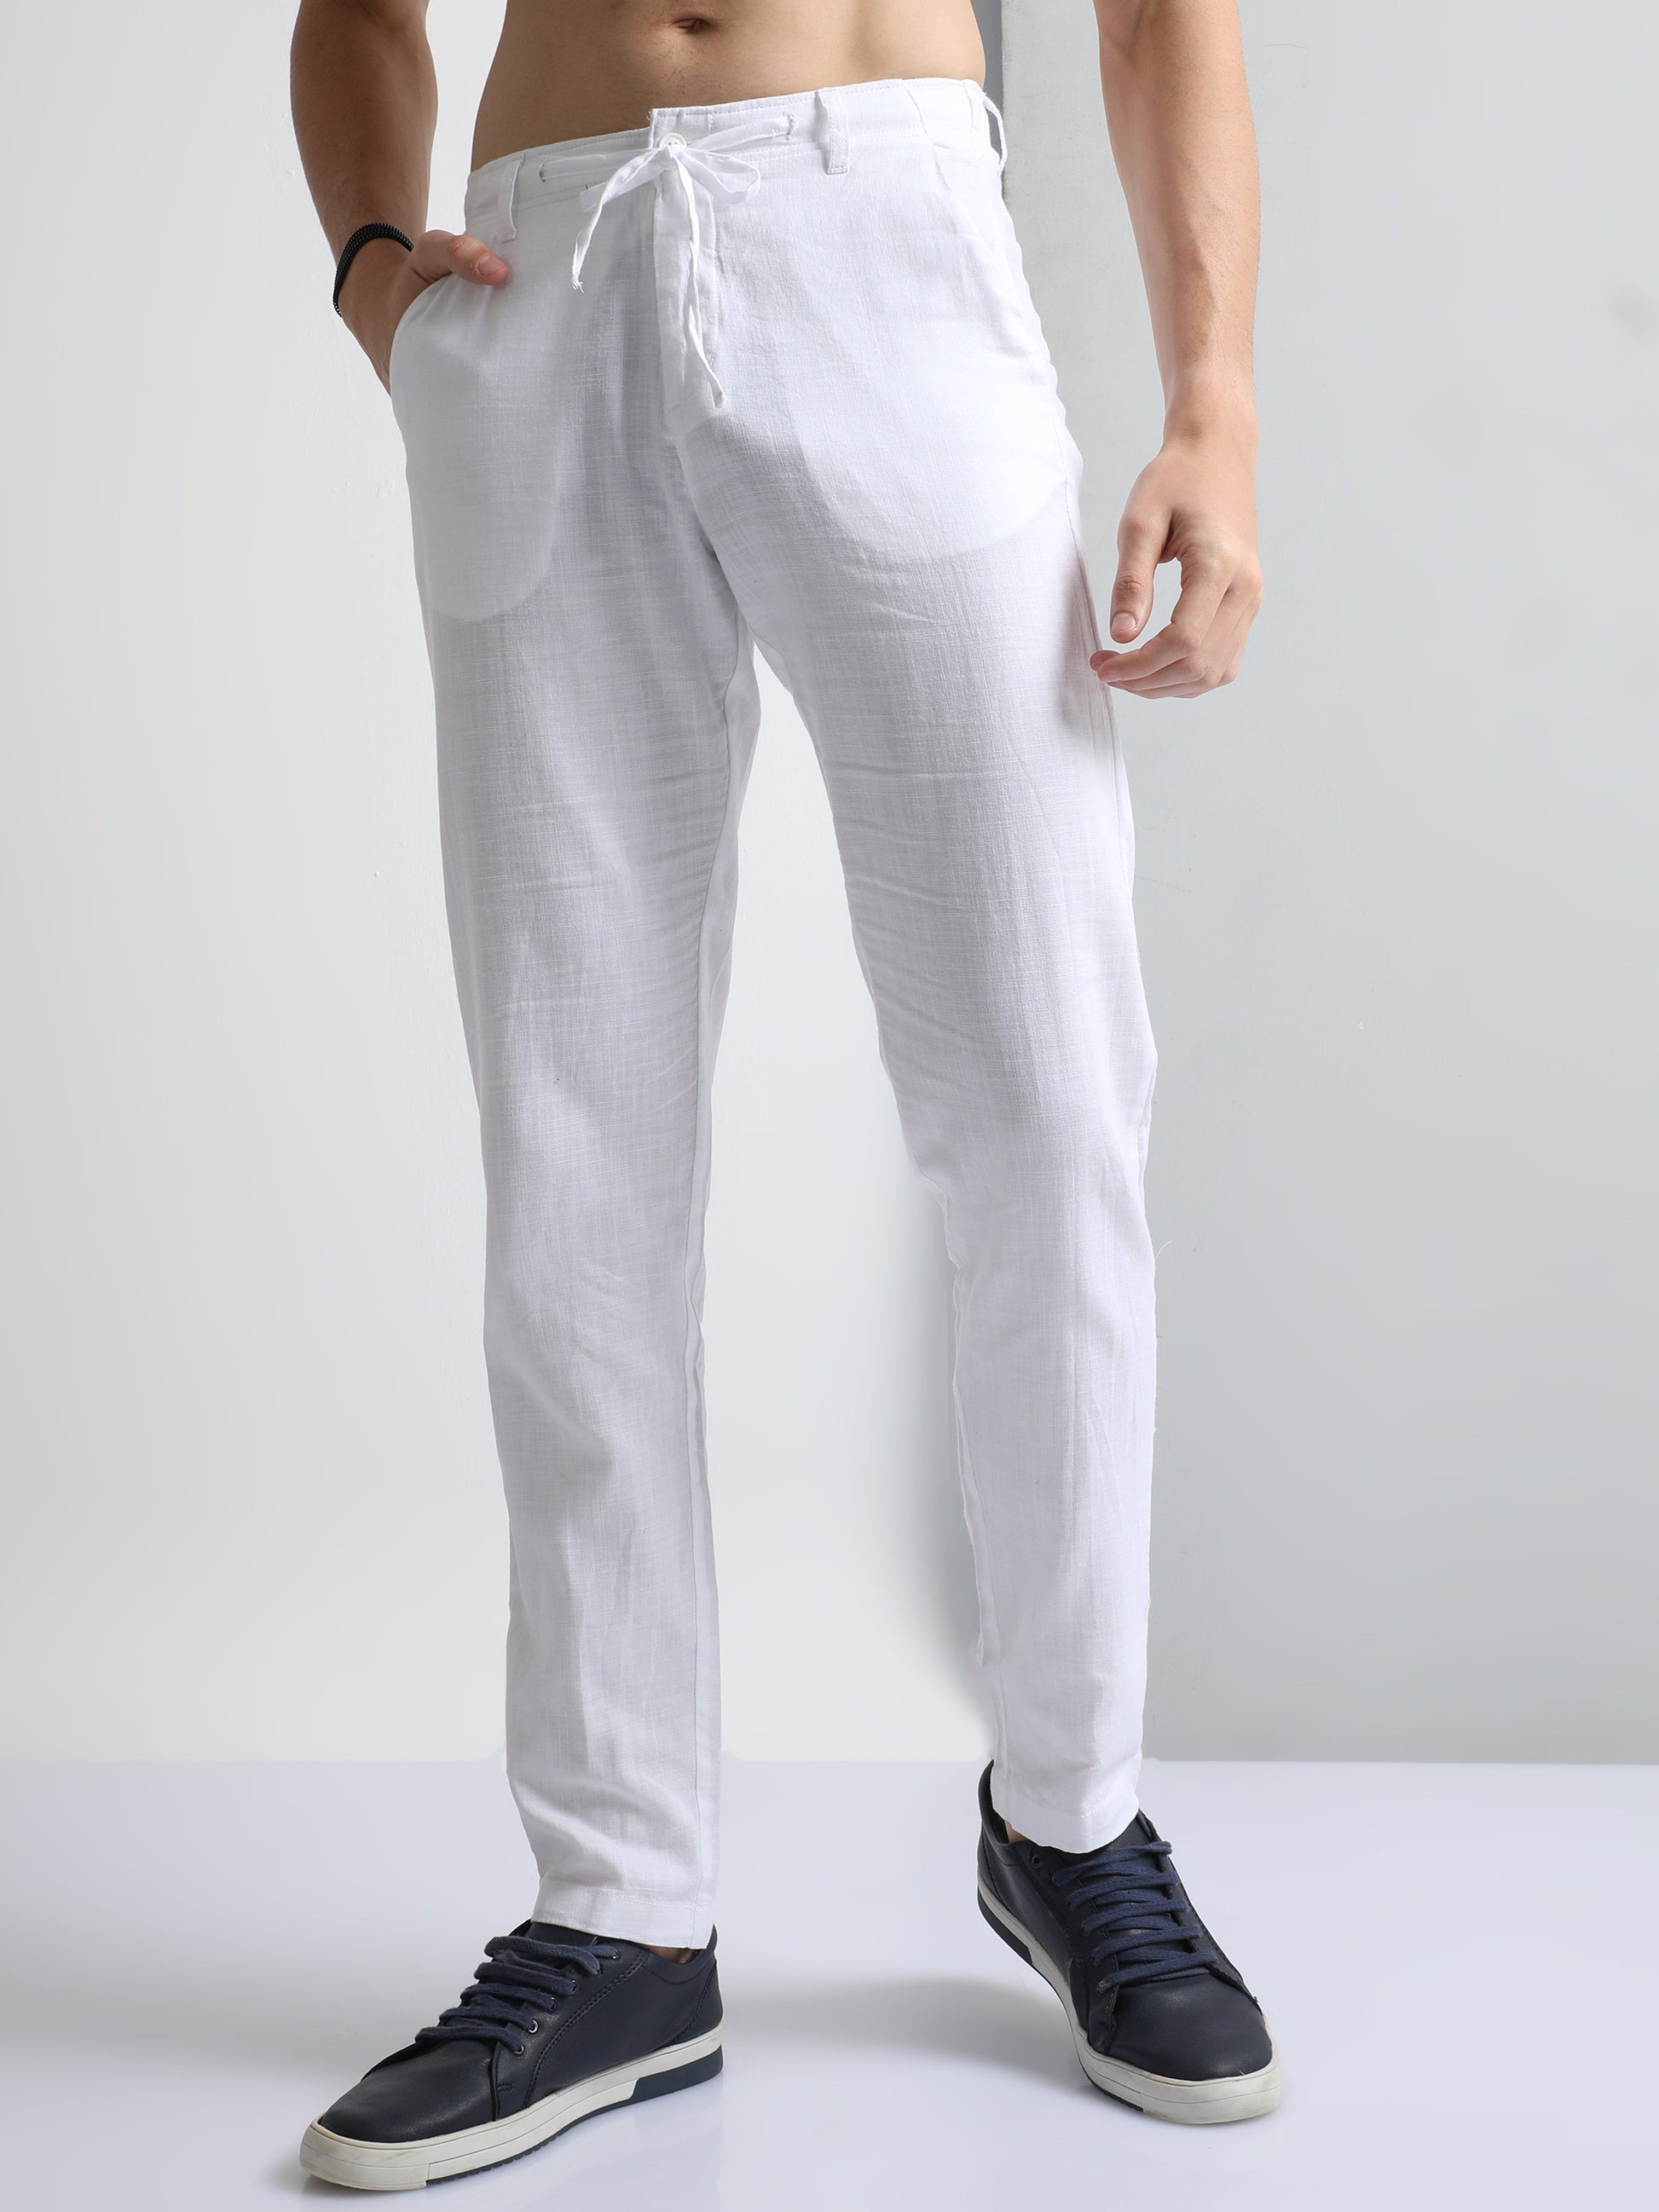 White Men's Drawcod Linen Fashion Pant